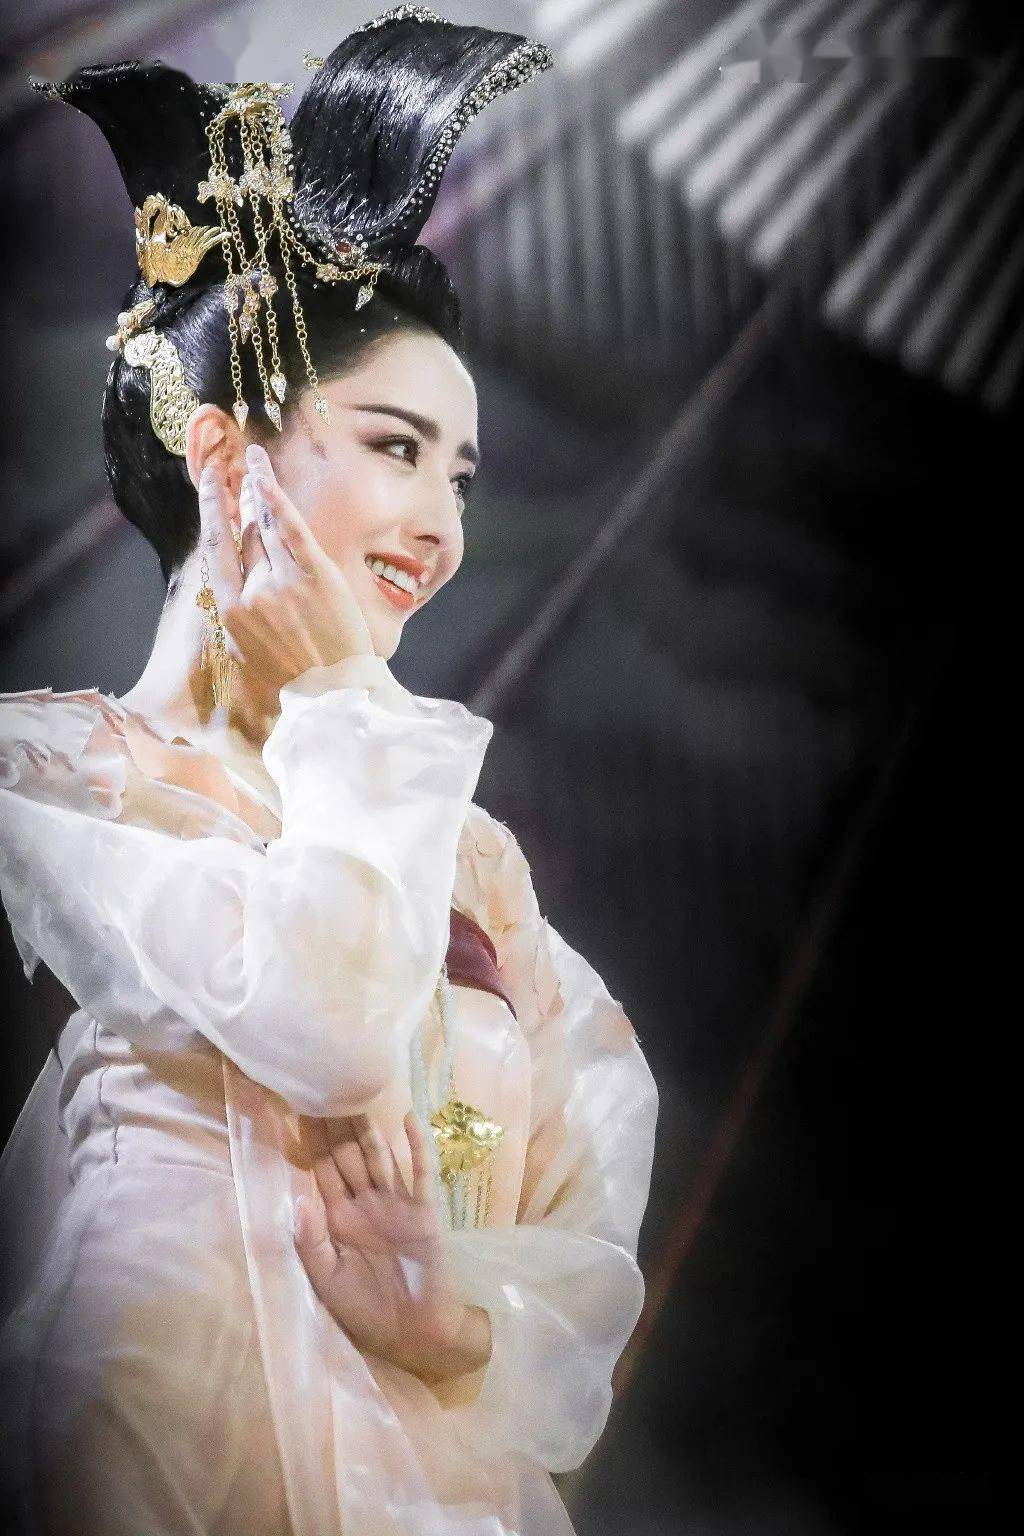 拿去做壁纸吧佟丽娅的这个惊鸿髻发型取材于唐代舞俑是由舞剧《杜甫》